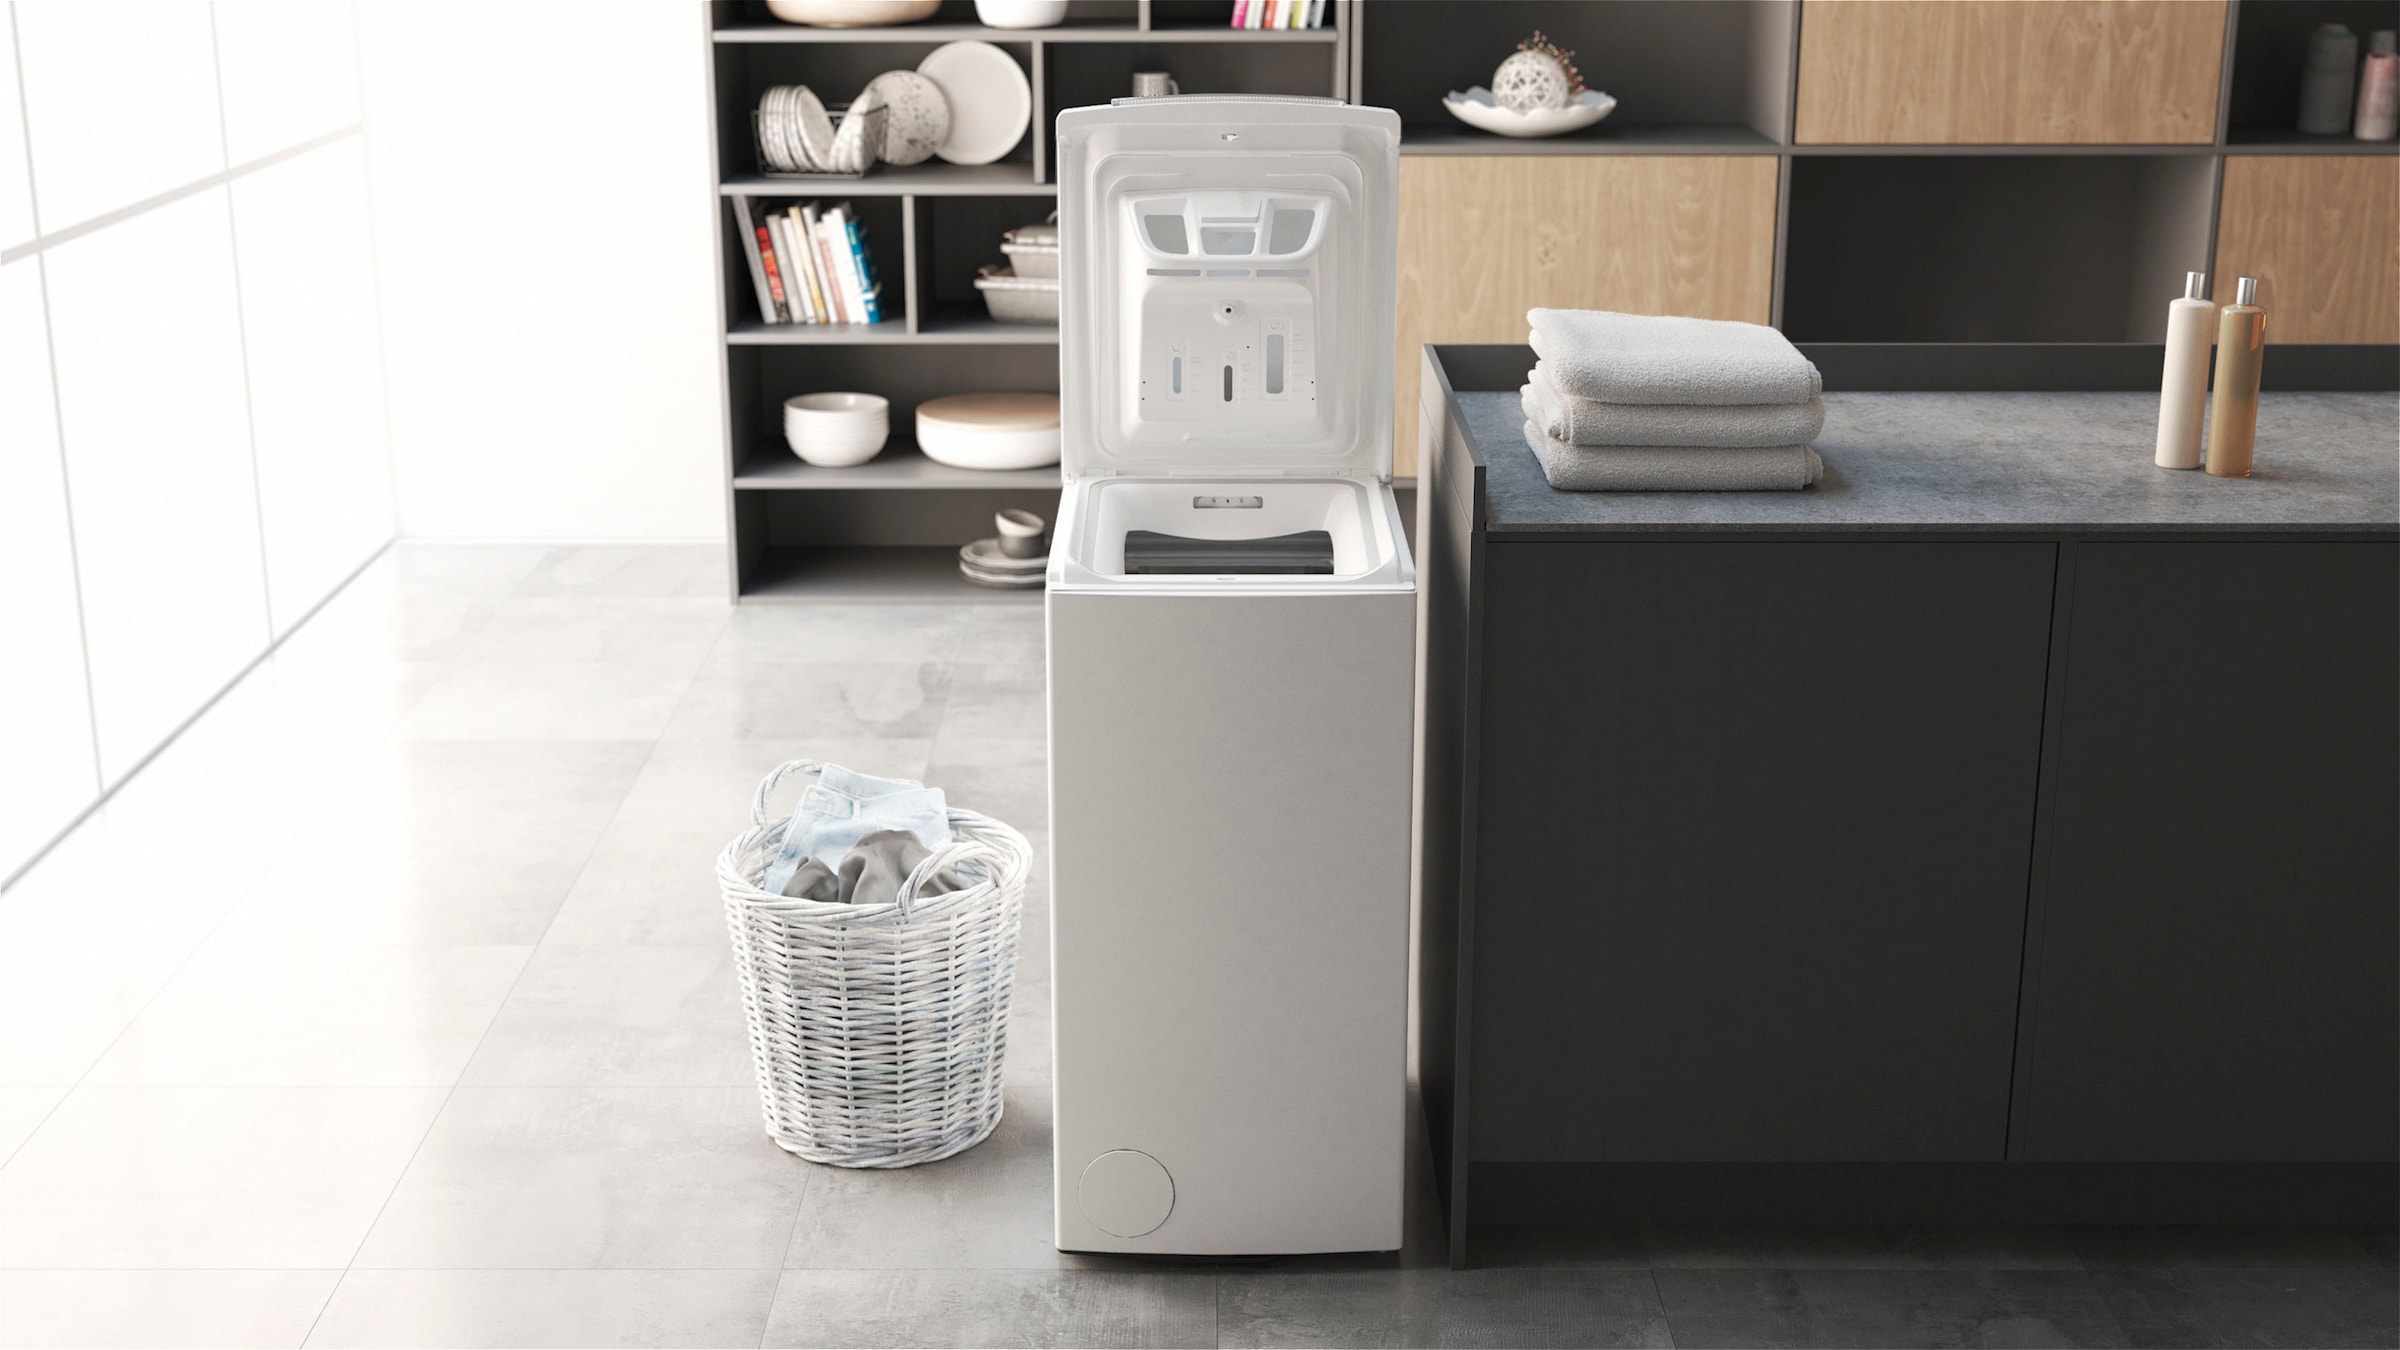 BAUKNECHT Waschmaschine U/min Smart mit Eco Jahren 6513 »WMT 3 WMT 6,5 kg, Eco Smart 1200 6513 C, Z Garantie Z Toplader C«, XXL